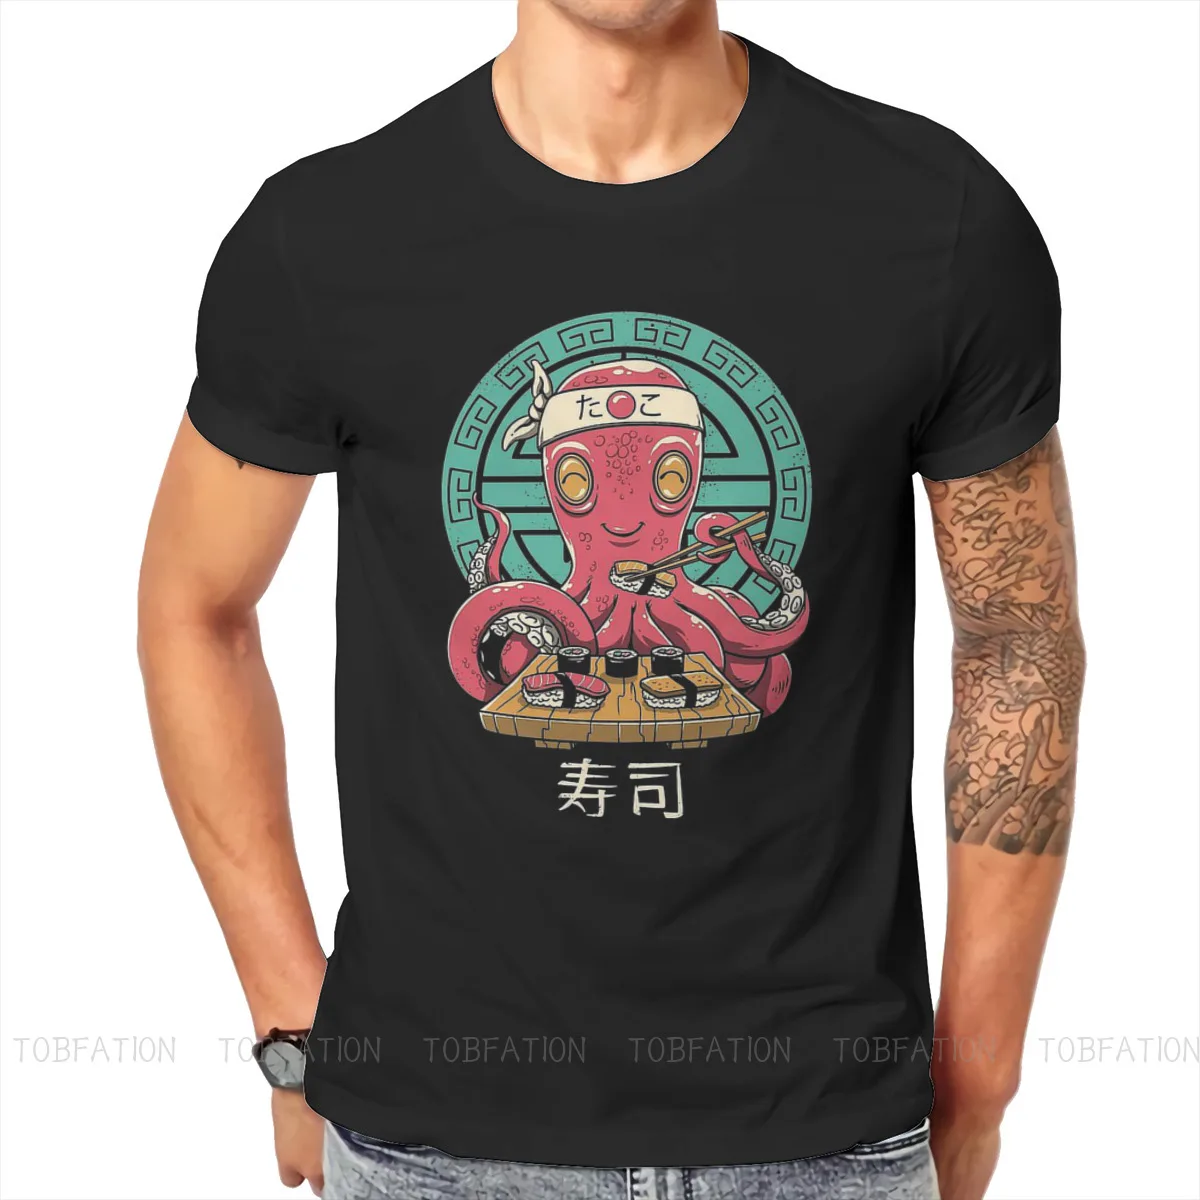 

Есть суши Kawaii футболка с изображением еды в классическом стиле больших размеров с О-образным вырезом Футболка Большая распродажа Harajuku мужс...